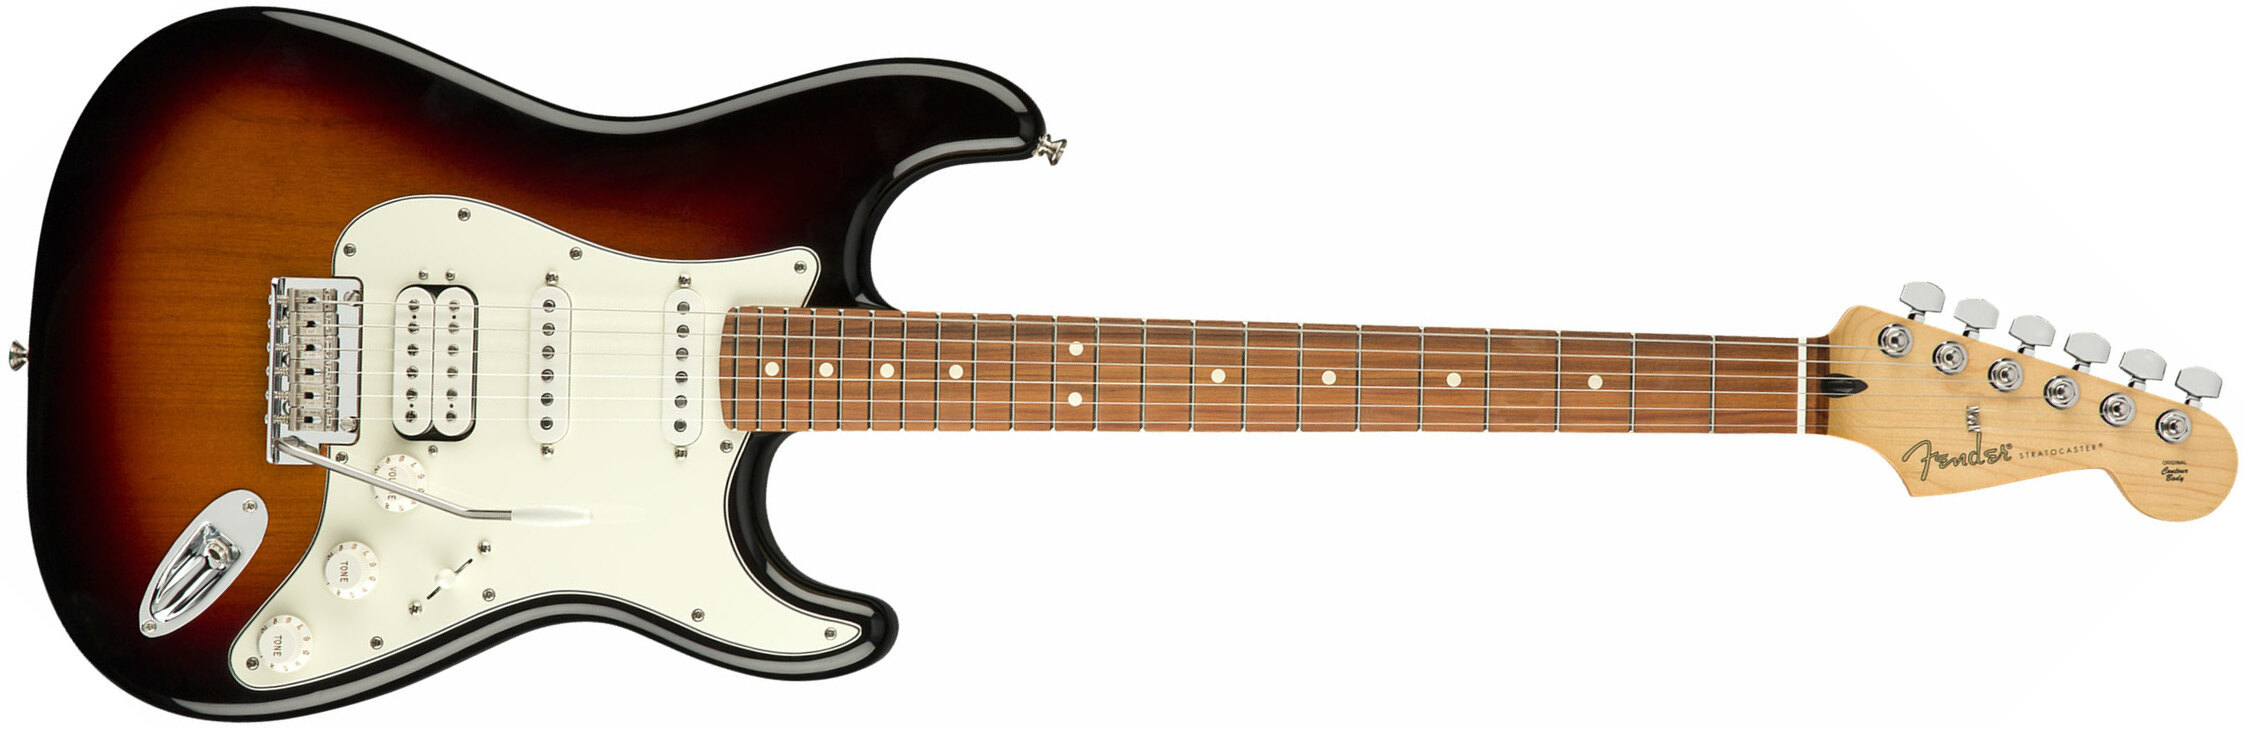 Fender Strat Player Mex Hss Pf - 3-color Sunburst - Elektrische gitaar in Str-vorm - Main picture